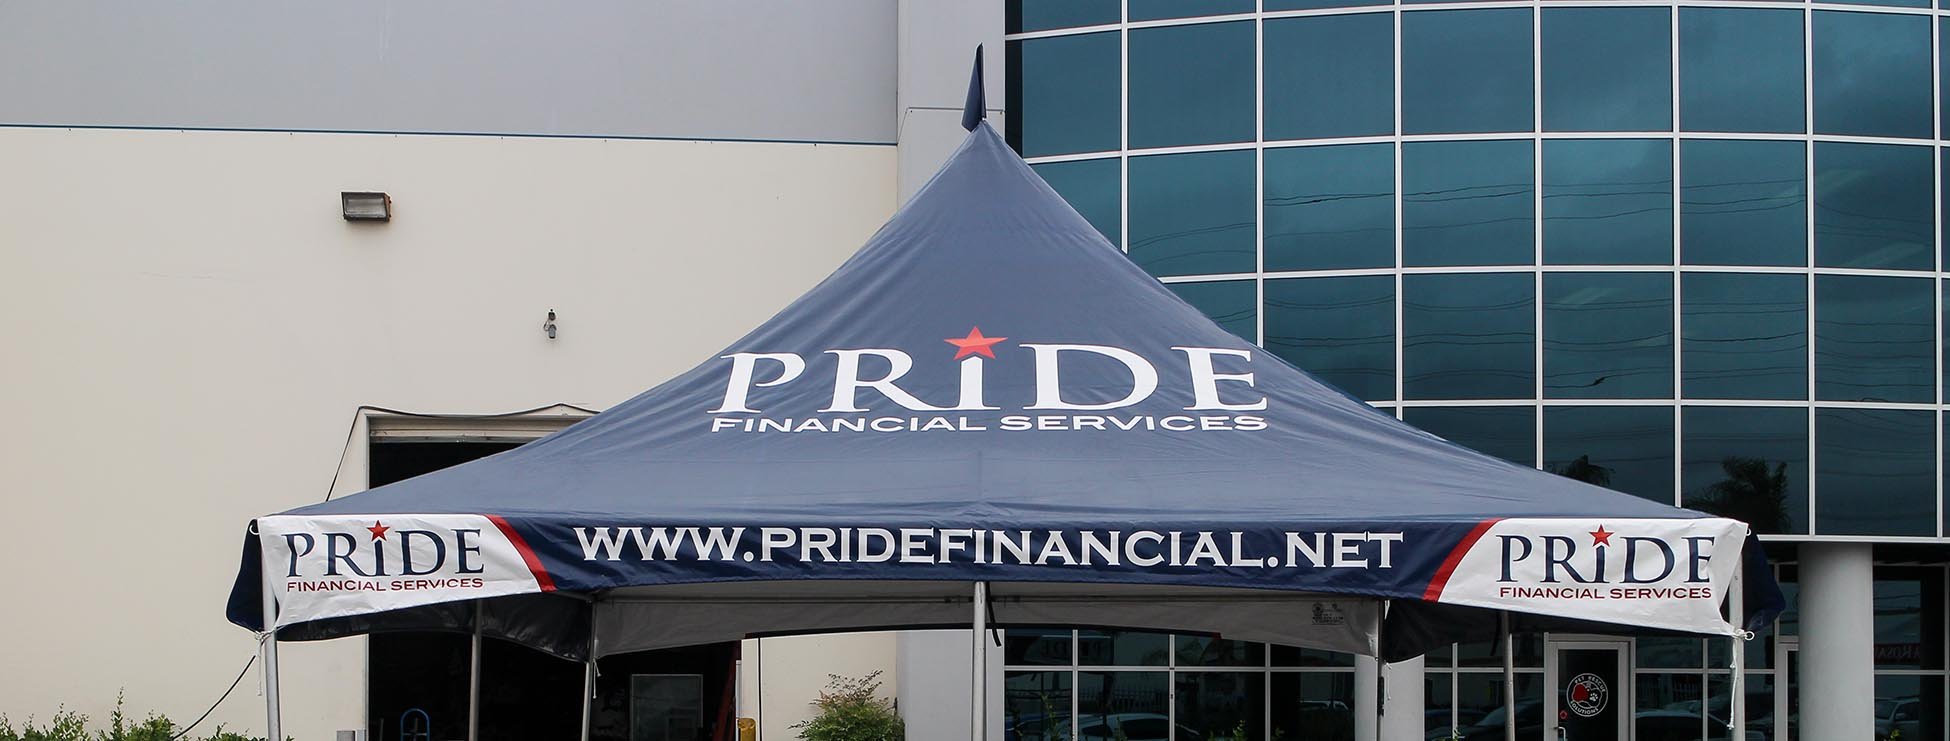 pride-financial-services-header.jpg